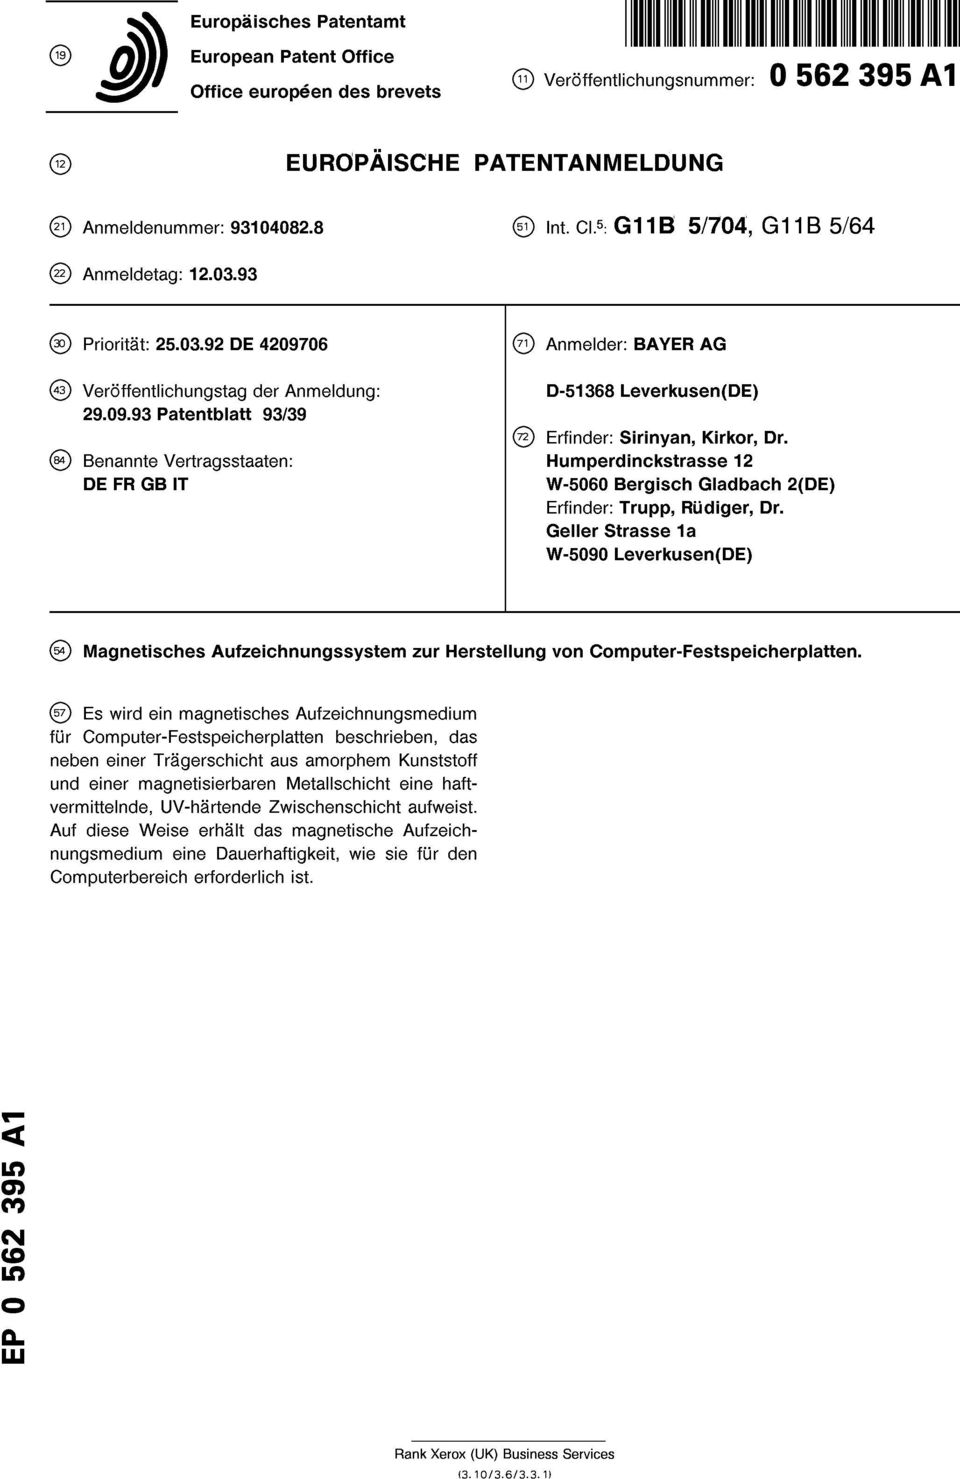 Benannte Vertragsstaaten: Humperdinckstrasse 12 DE FR GB IT W-5060 Bergisch Gladbach 2(DE) Erfinder: Trupp, Rudiger, Dr.